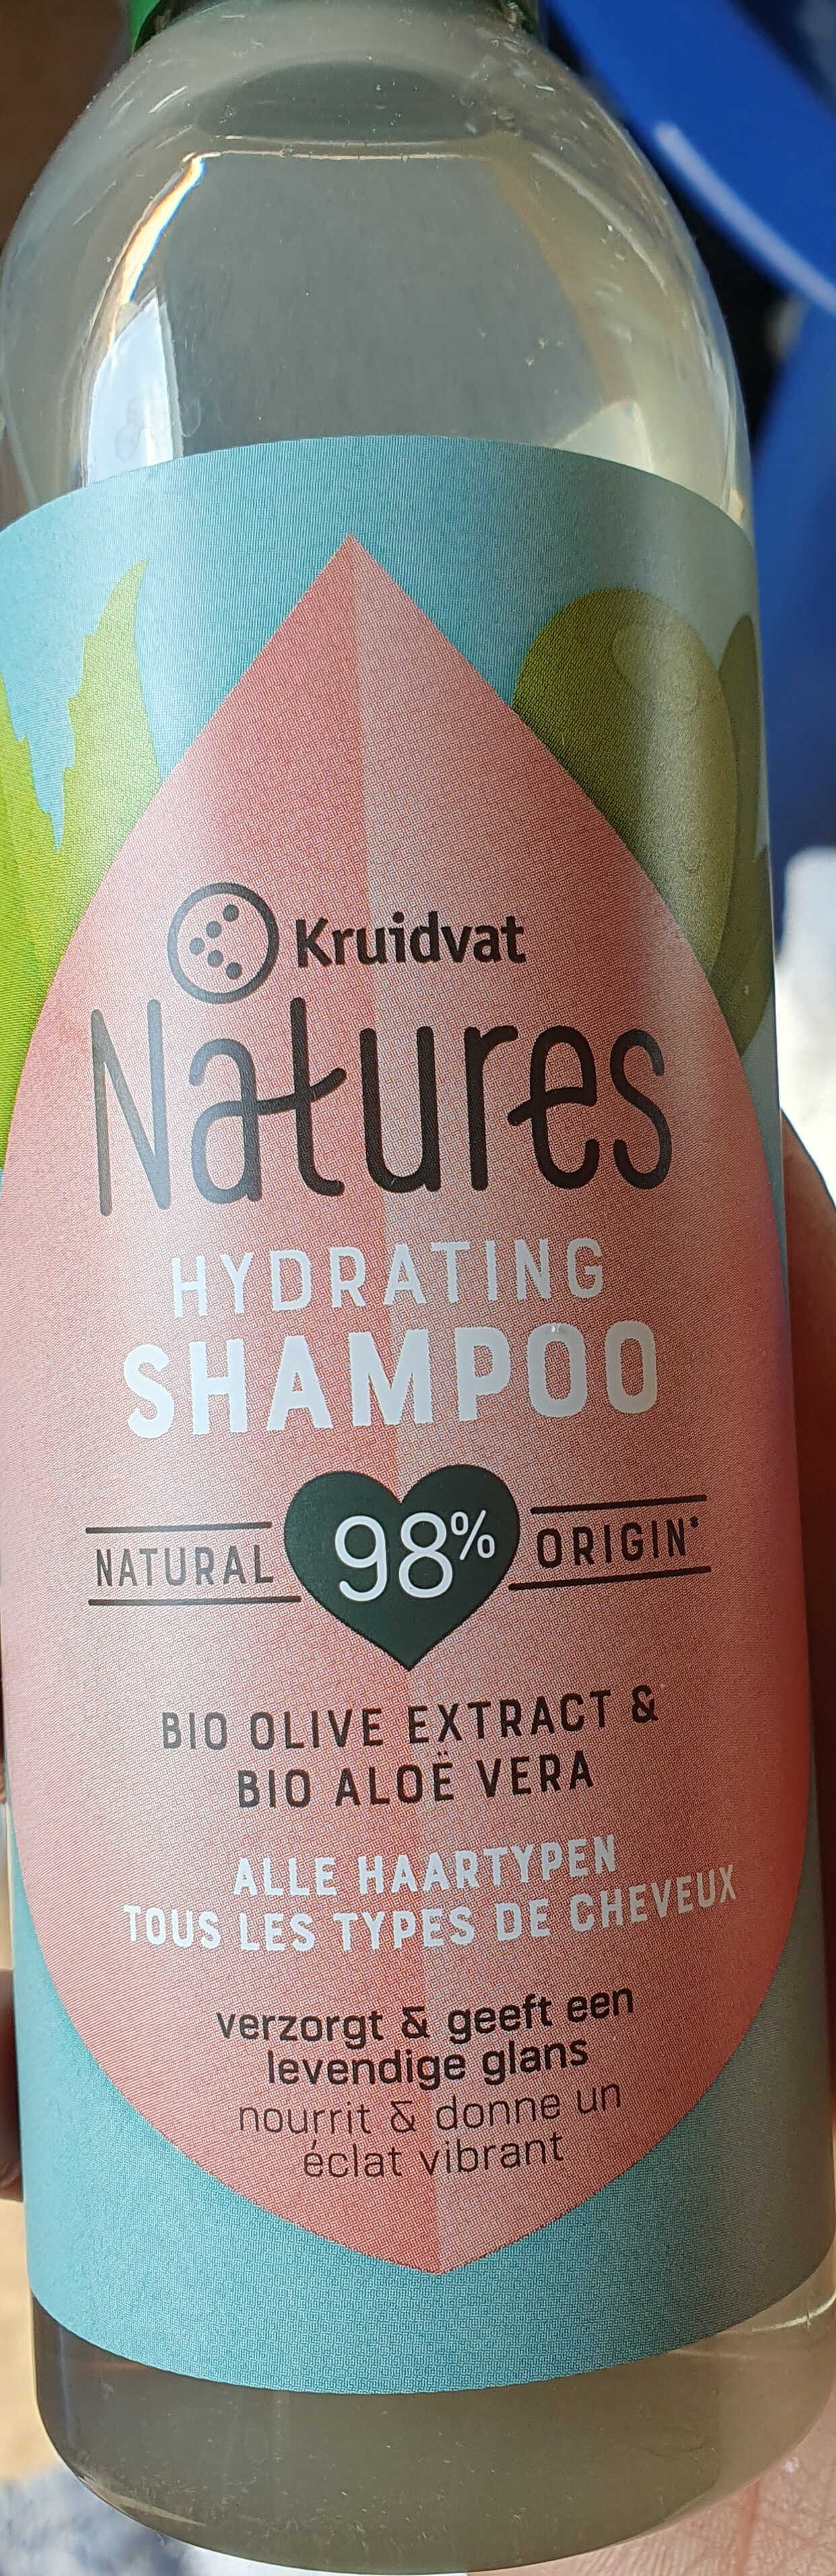 Natures hydrating shampoo - Produit - fr